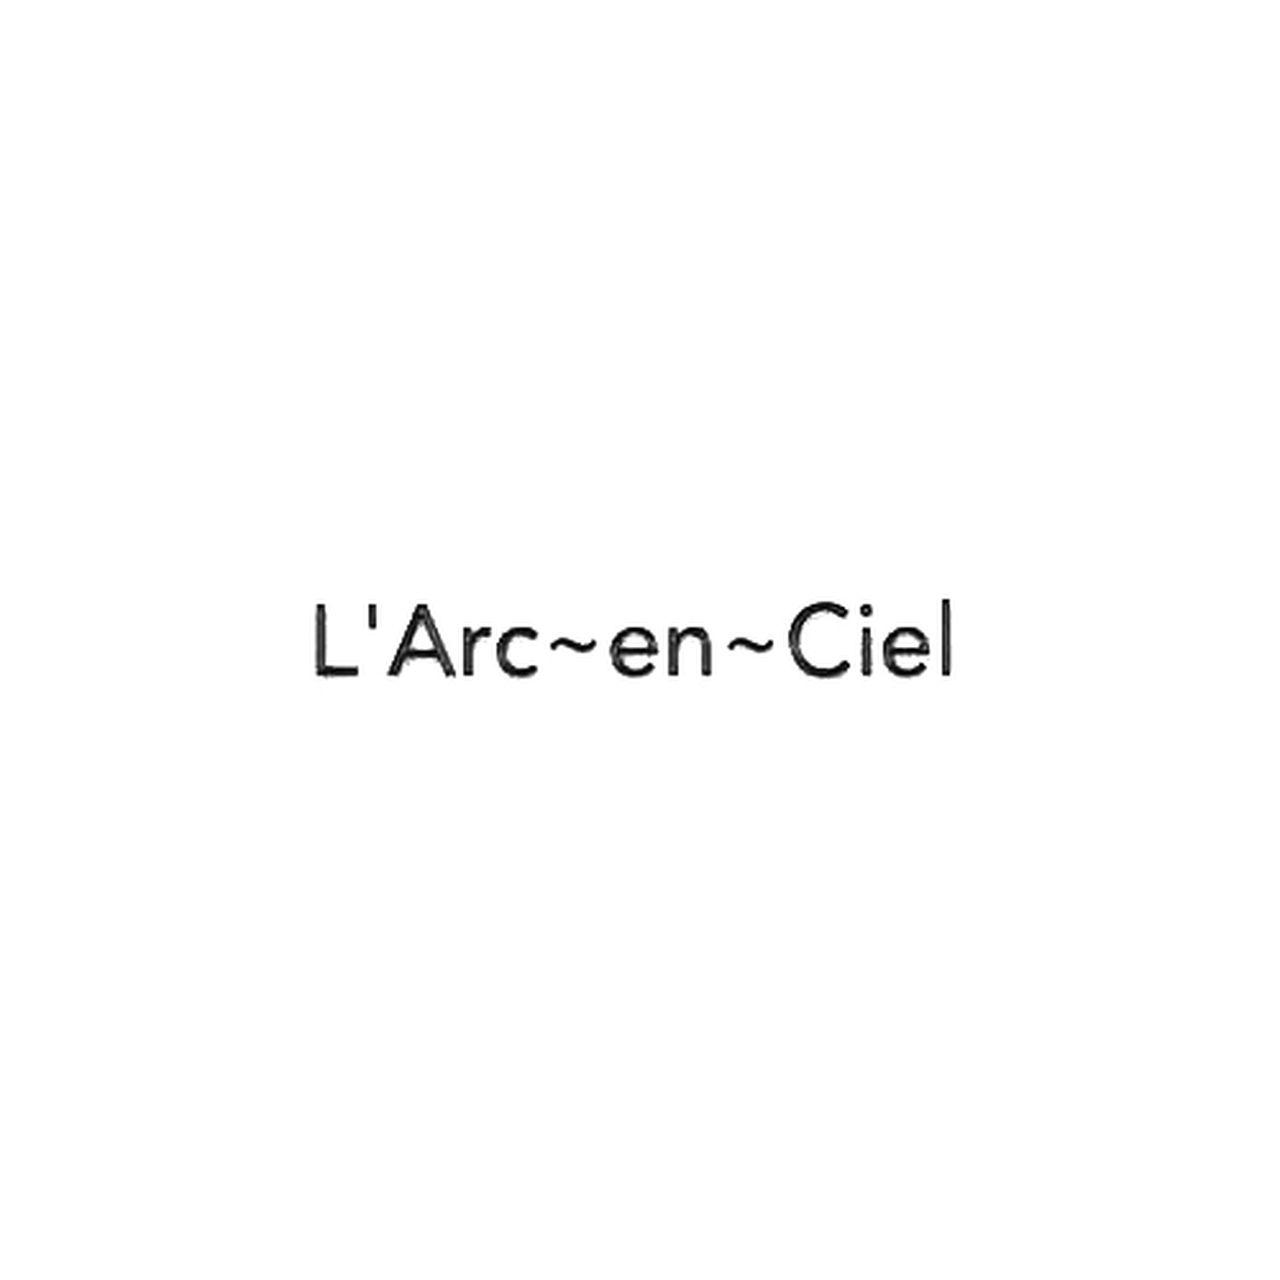 Ciel Logo - Arc~en~Ciel Rock Band Logo Decal